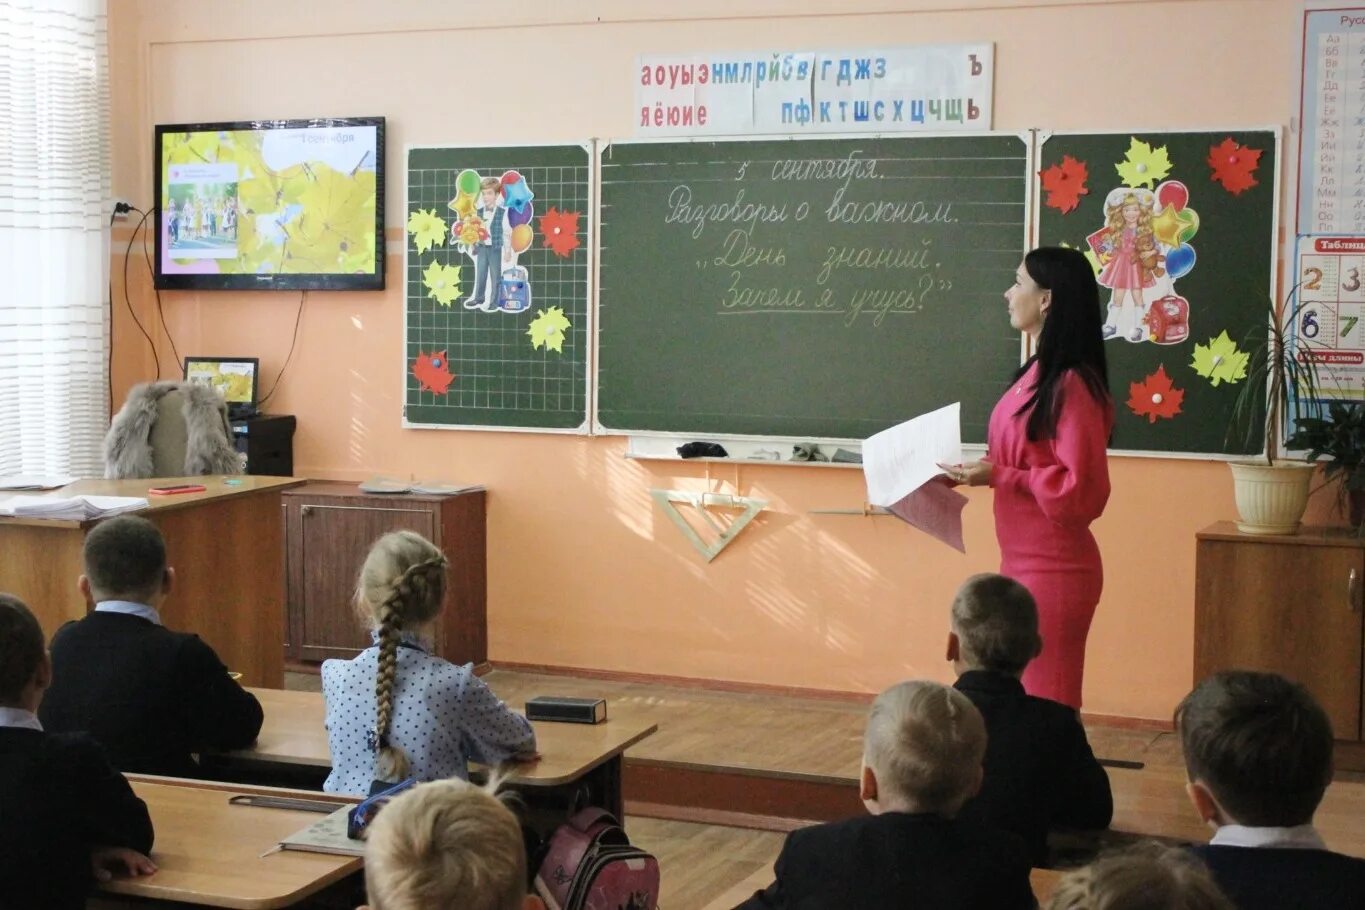 15 учебная неделя. Классный урок. Урок классный час в школе. Фотография классного часа. Фото на тему Российская школа.